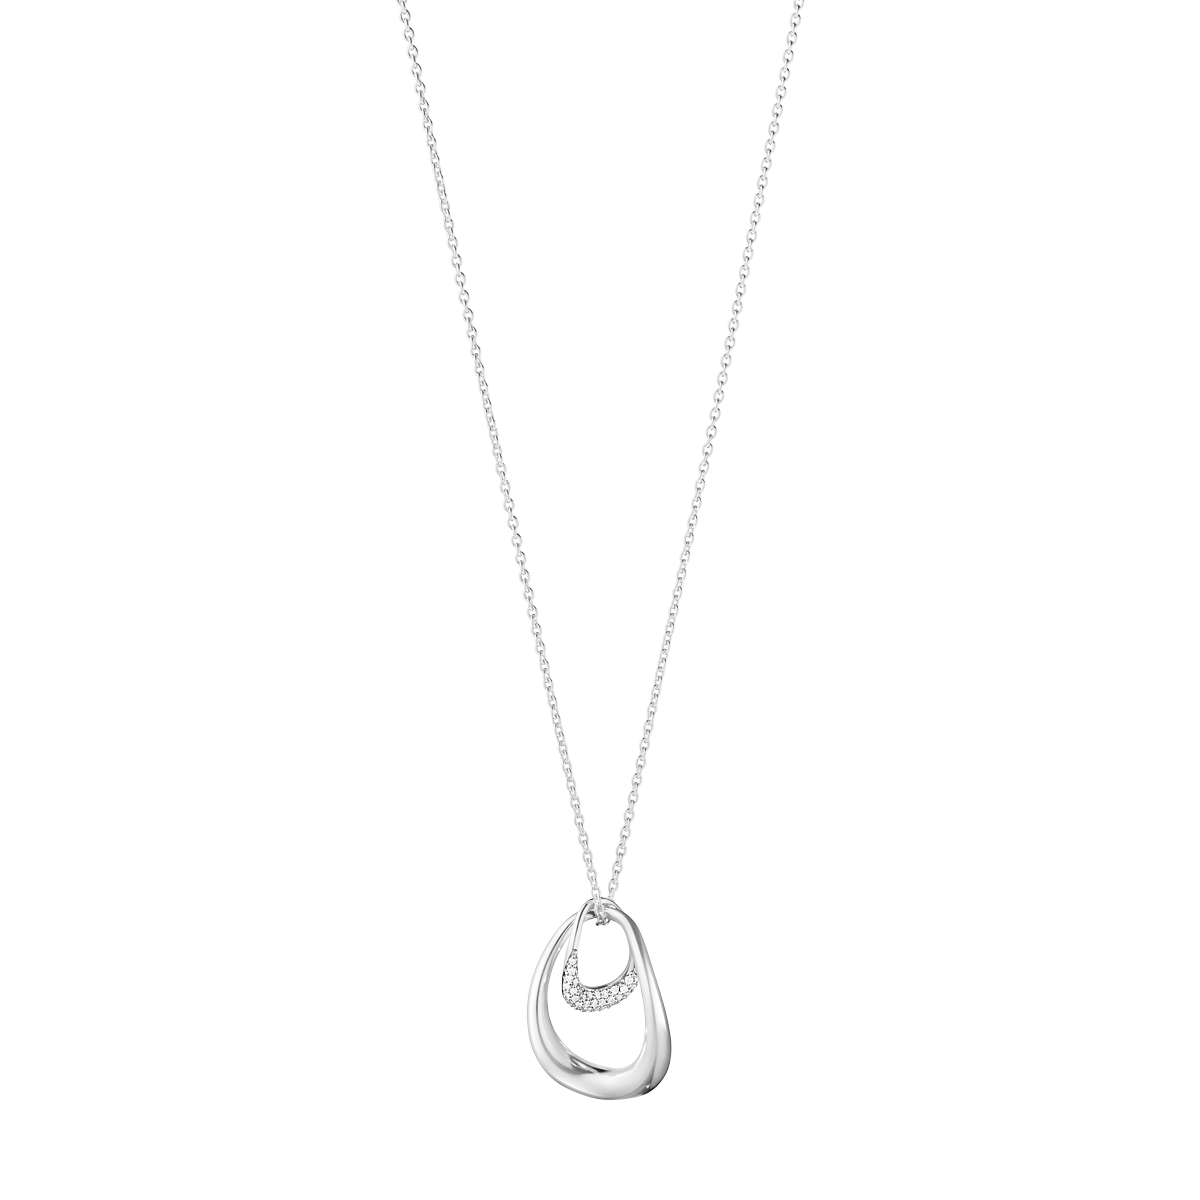 Offspring halskæde med stort vedhæng og diamanter - sølv fra Georg Jensen